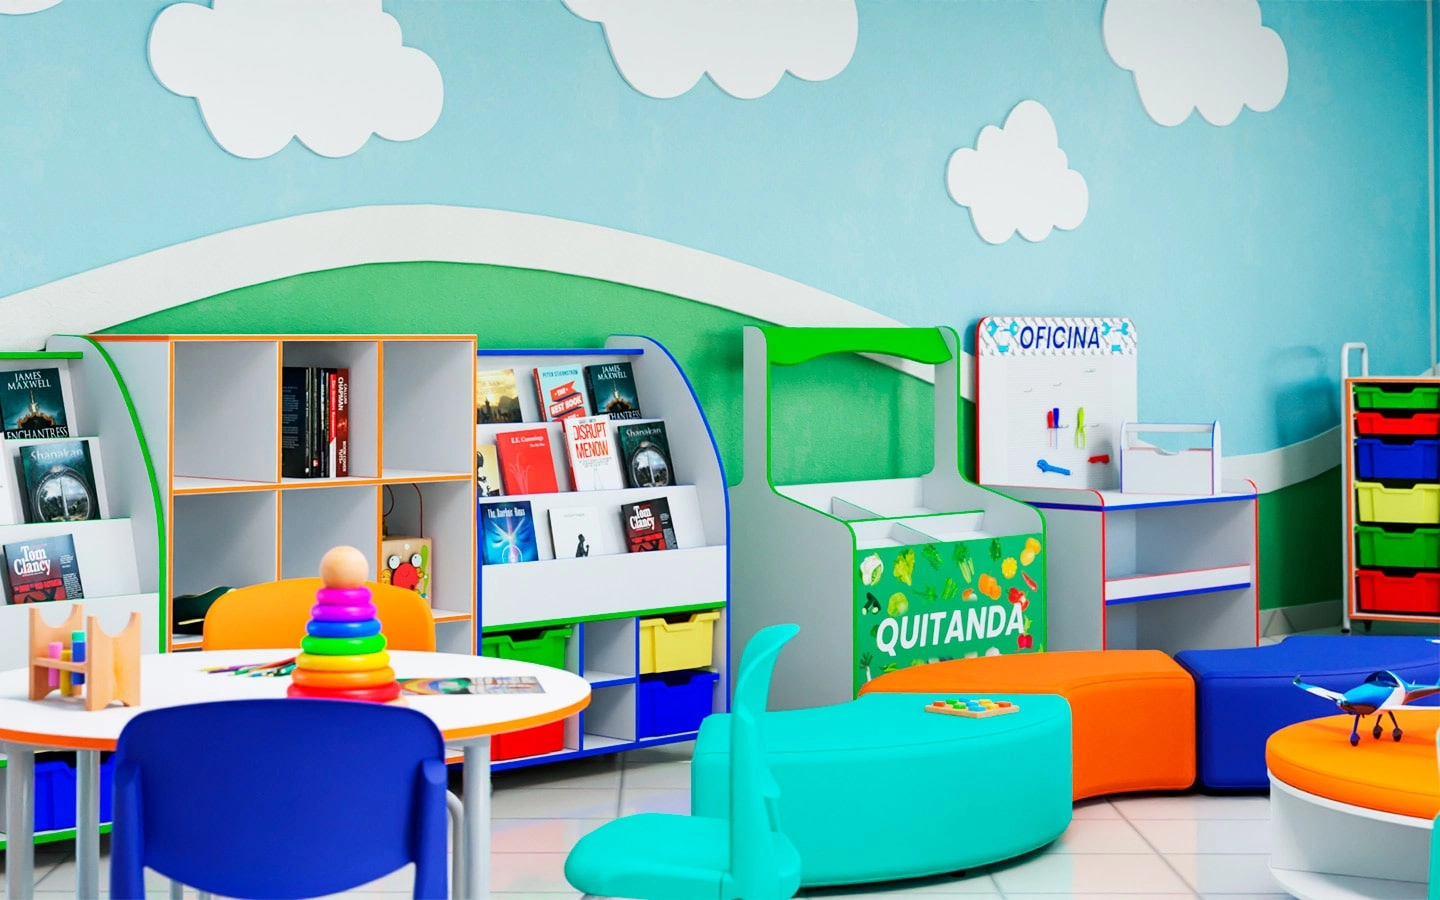 uploads/Parte de sala de aula infantil com diversos armários com brinquedos, algumas mesas redondas com cadeiras e puffs - além de pinturas de nuvens nas paredes azuis.